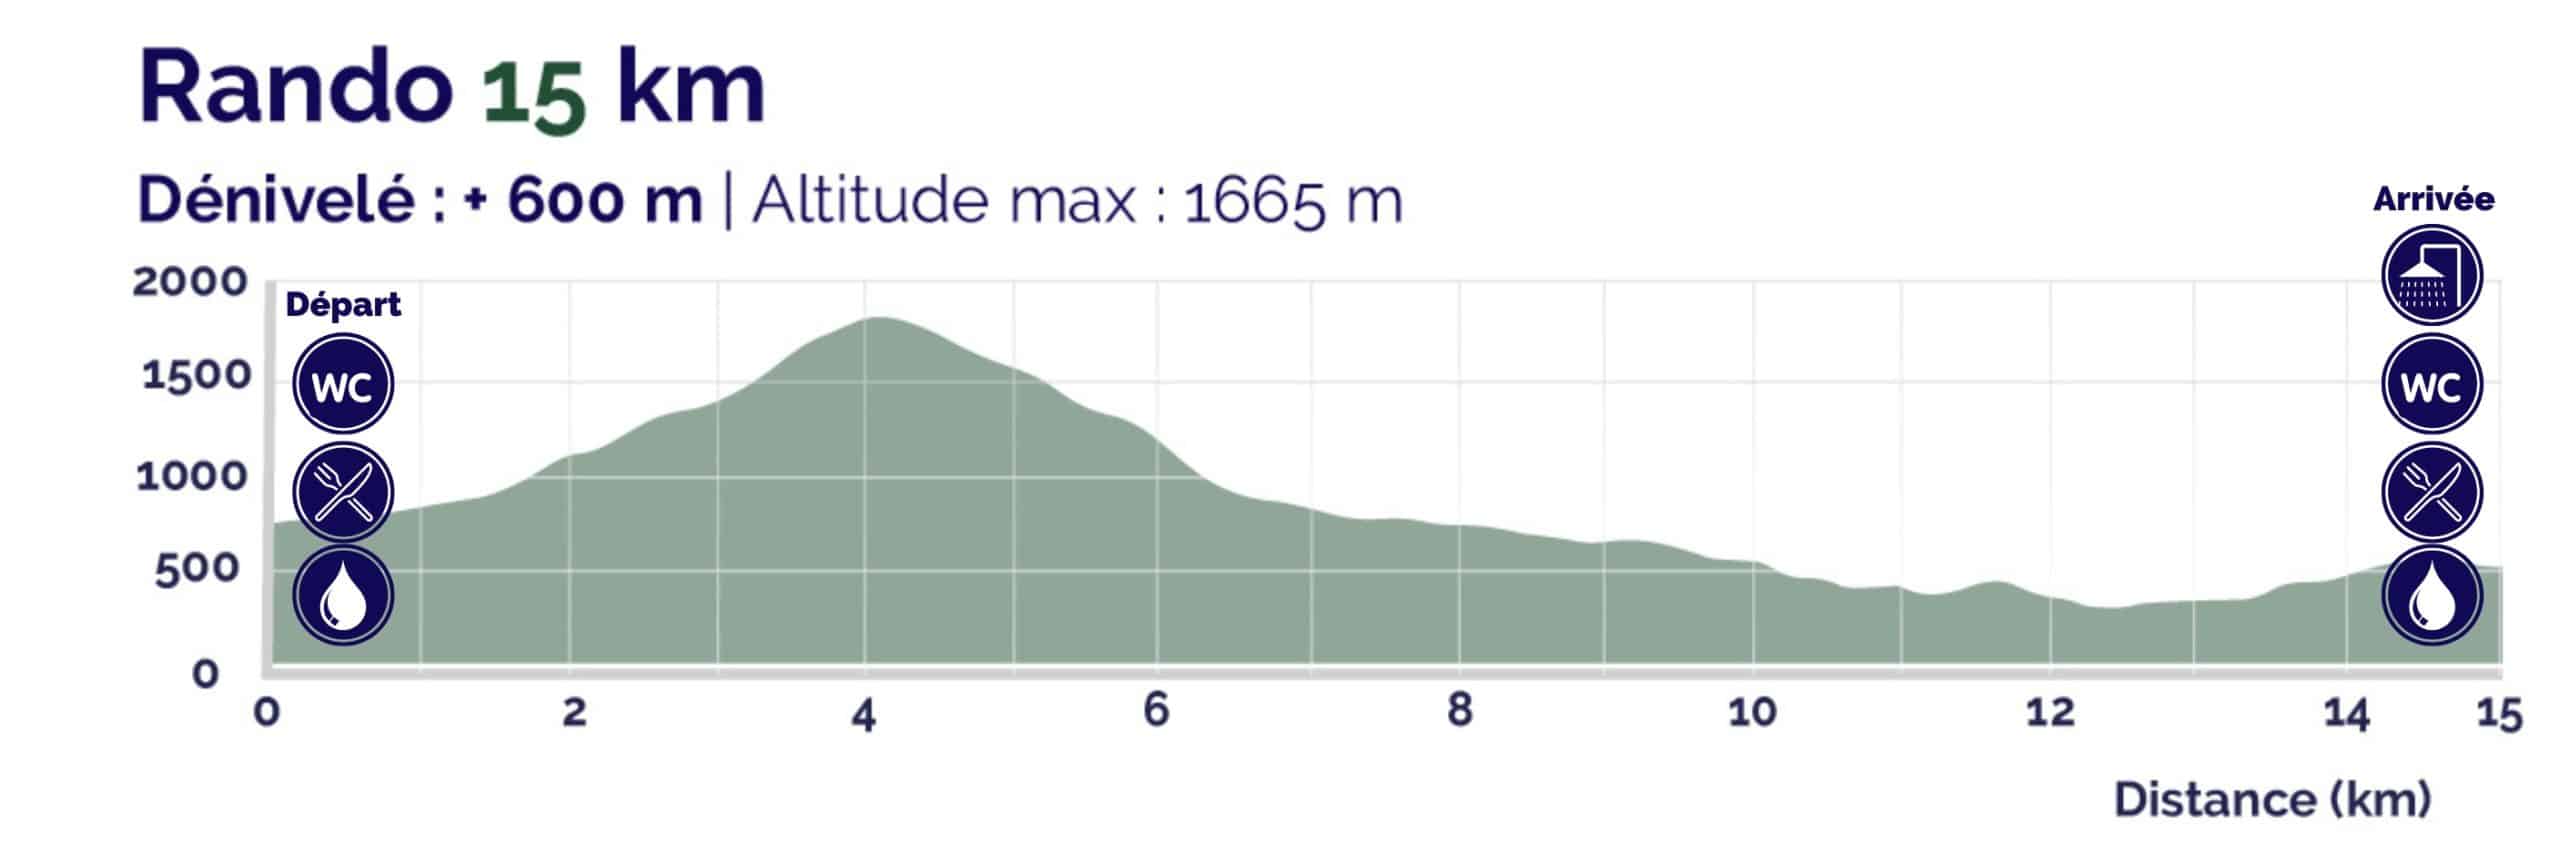 Profile Transju&#039; Trails Rando 15 km